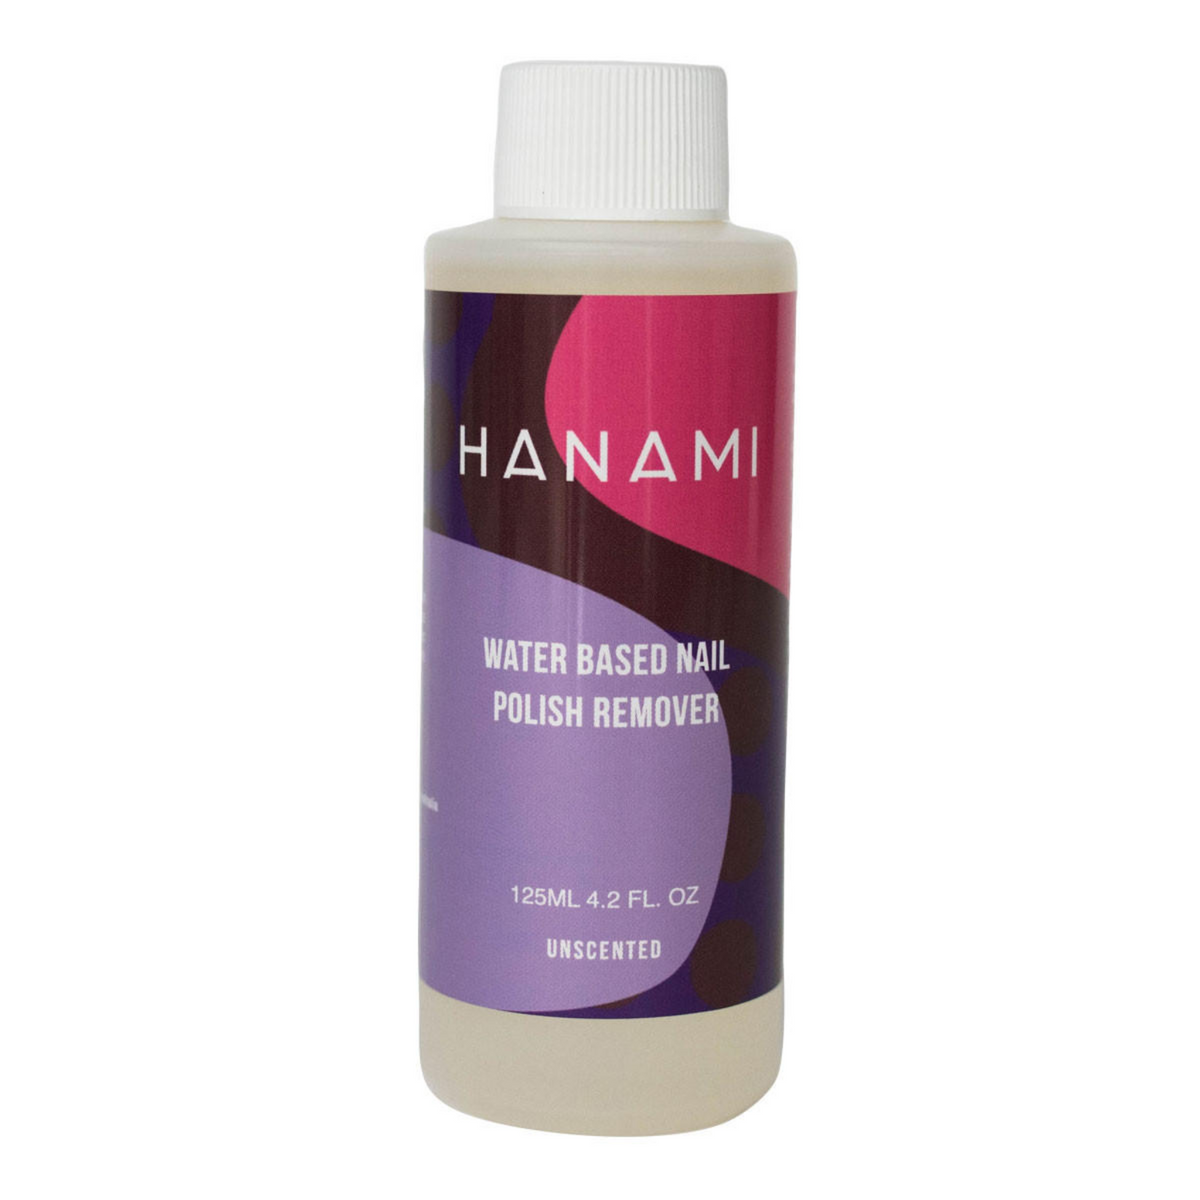 Hanami - Water Based Nail Polish Remover 125ml (unscented)